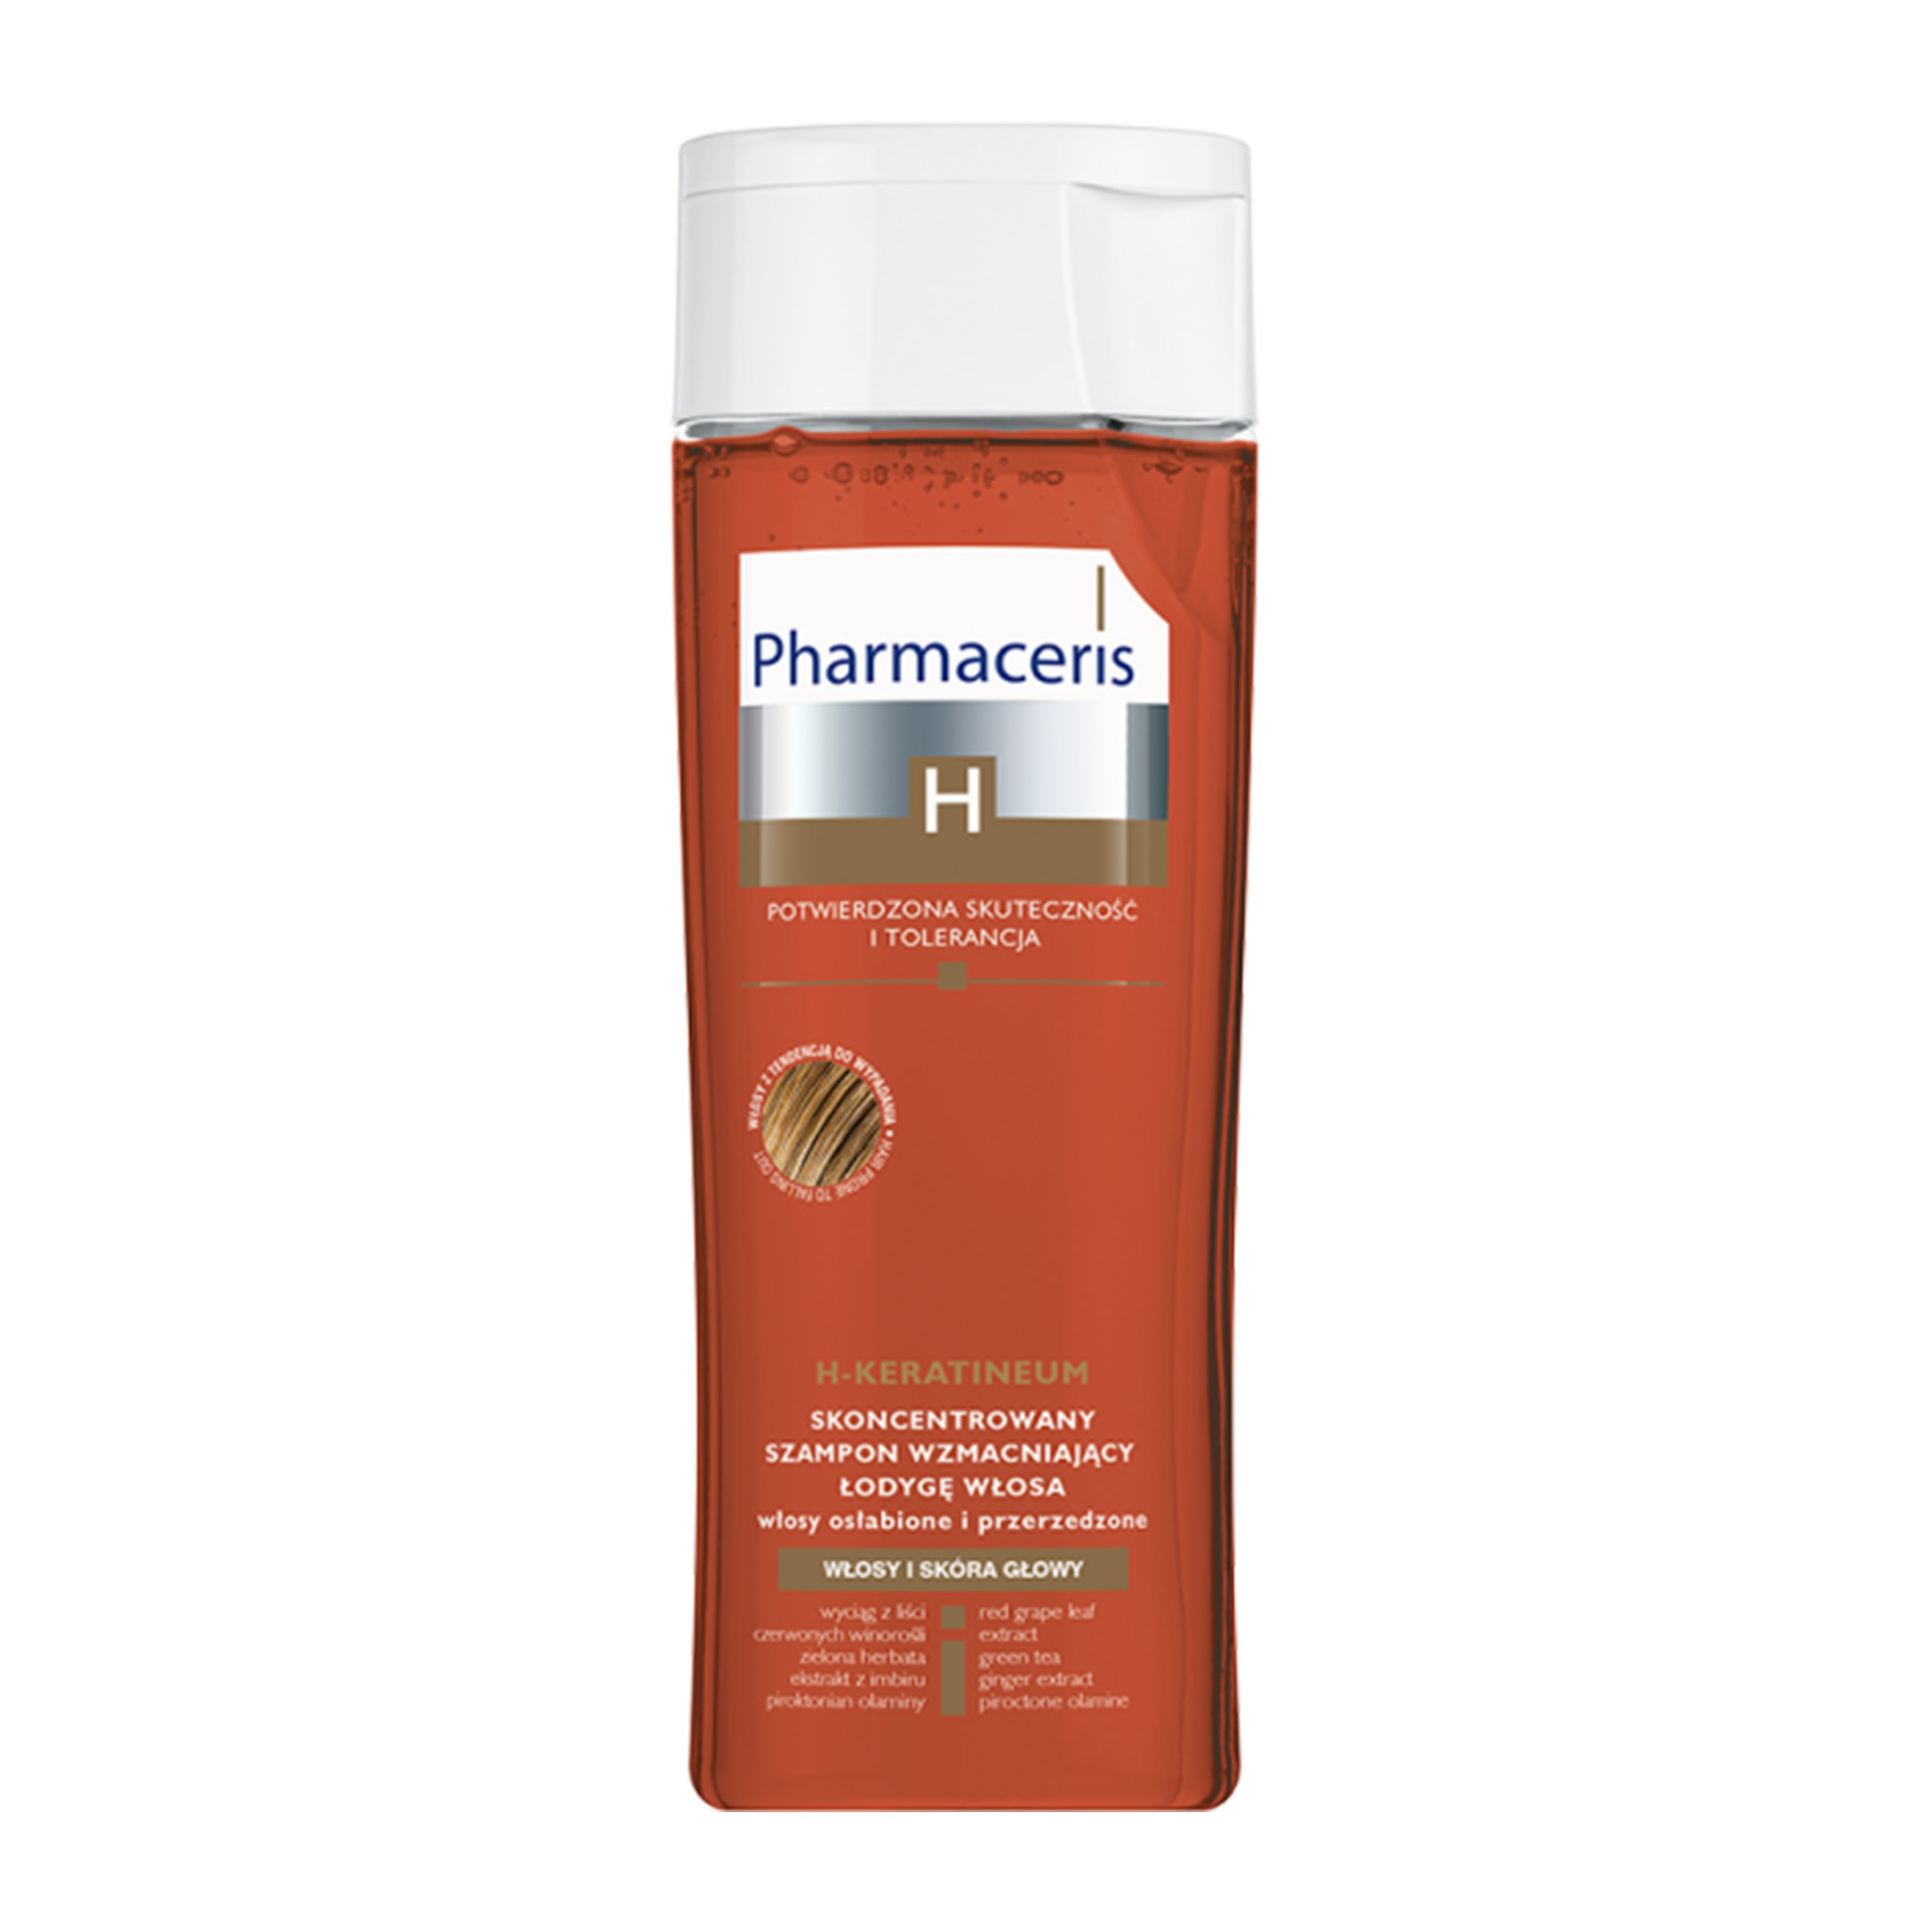 Концентрований зміцнюючий шампунь Pharmaceris H H-Keratineum для ослабленого волосся, 250 мл (E1572) - фото 1